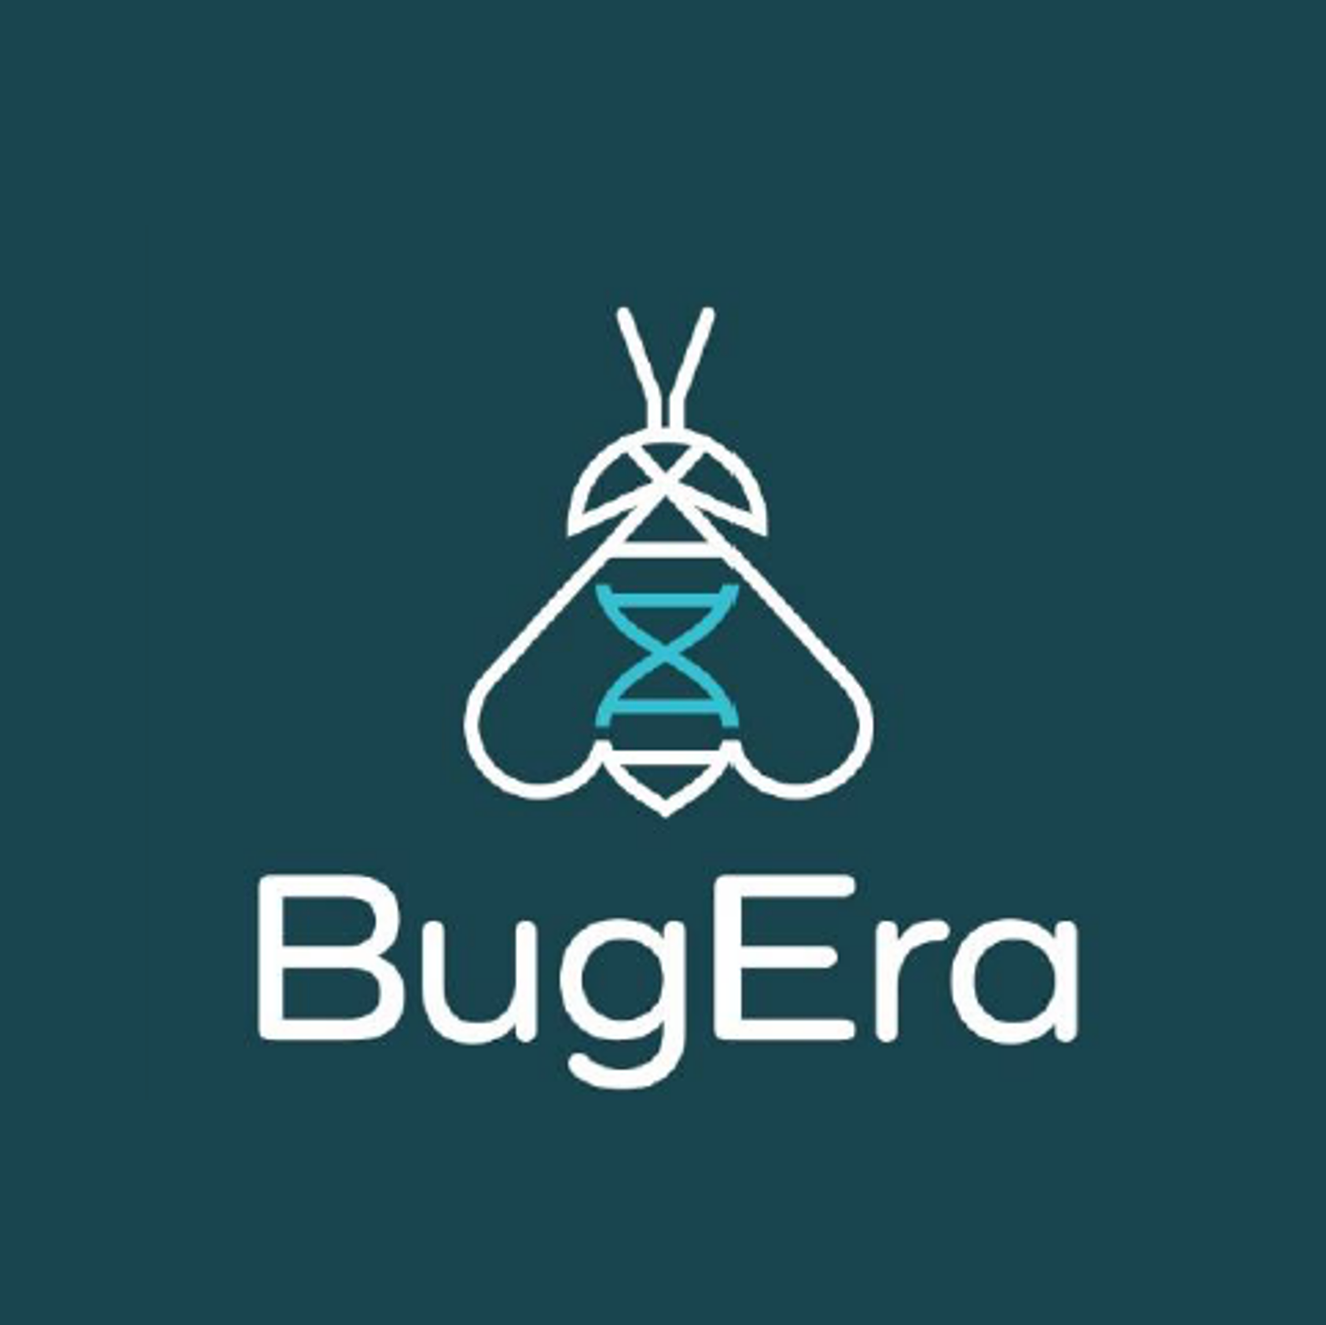 BugEra Logo